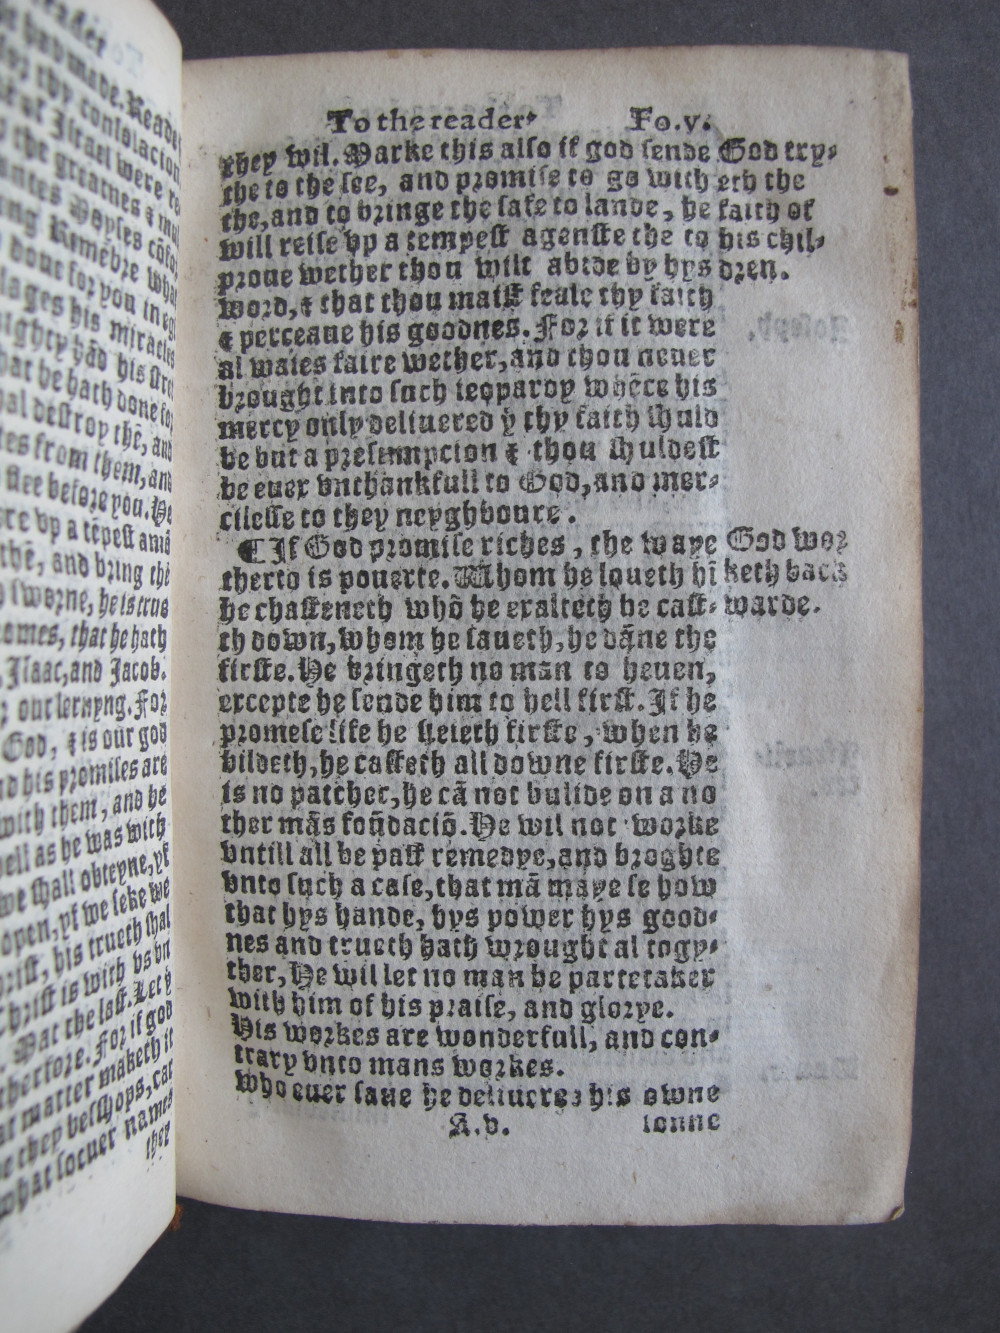 1 Folio A5 recto